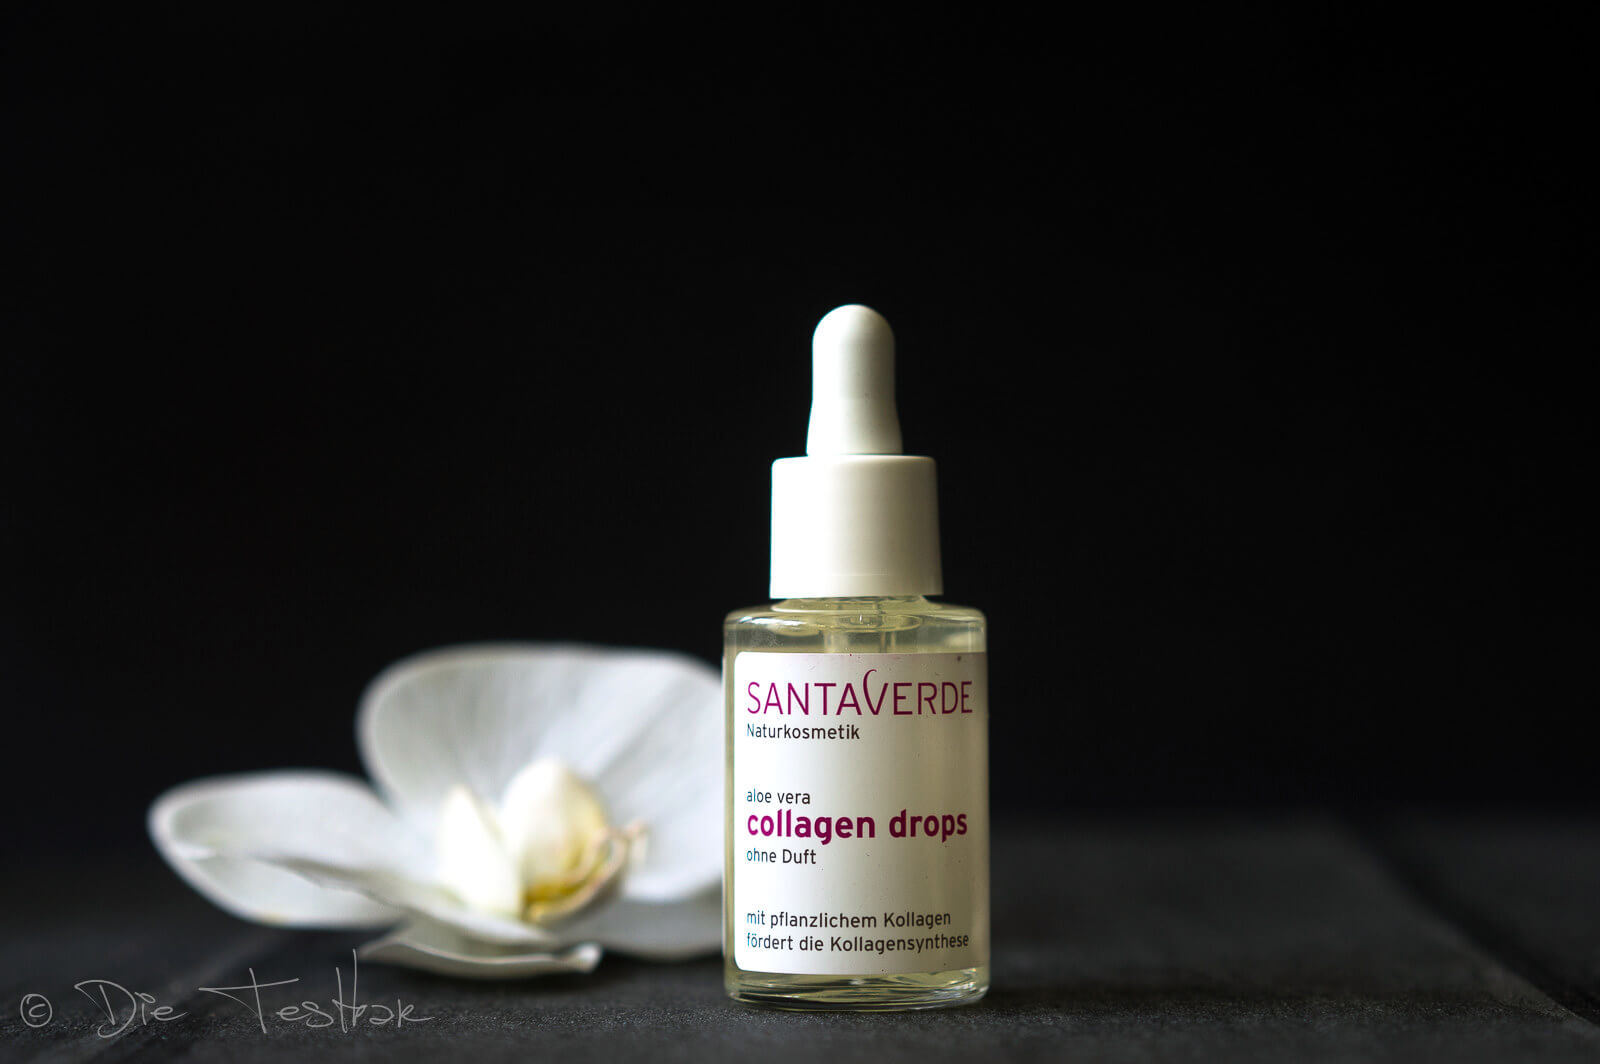 Altbewährte Reinigung und Pflege und wirksame Neuheiten - Gesichtspflege mit Kollagen und Probiotika von Santaverde 7